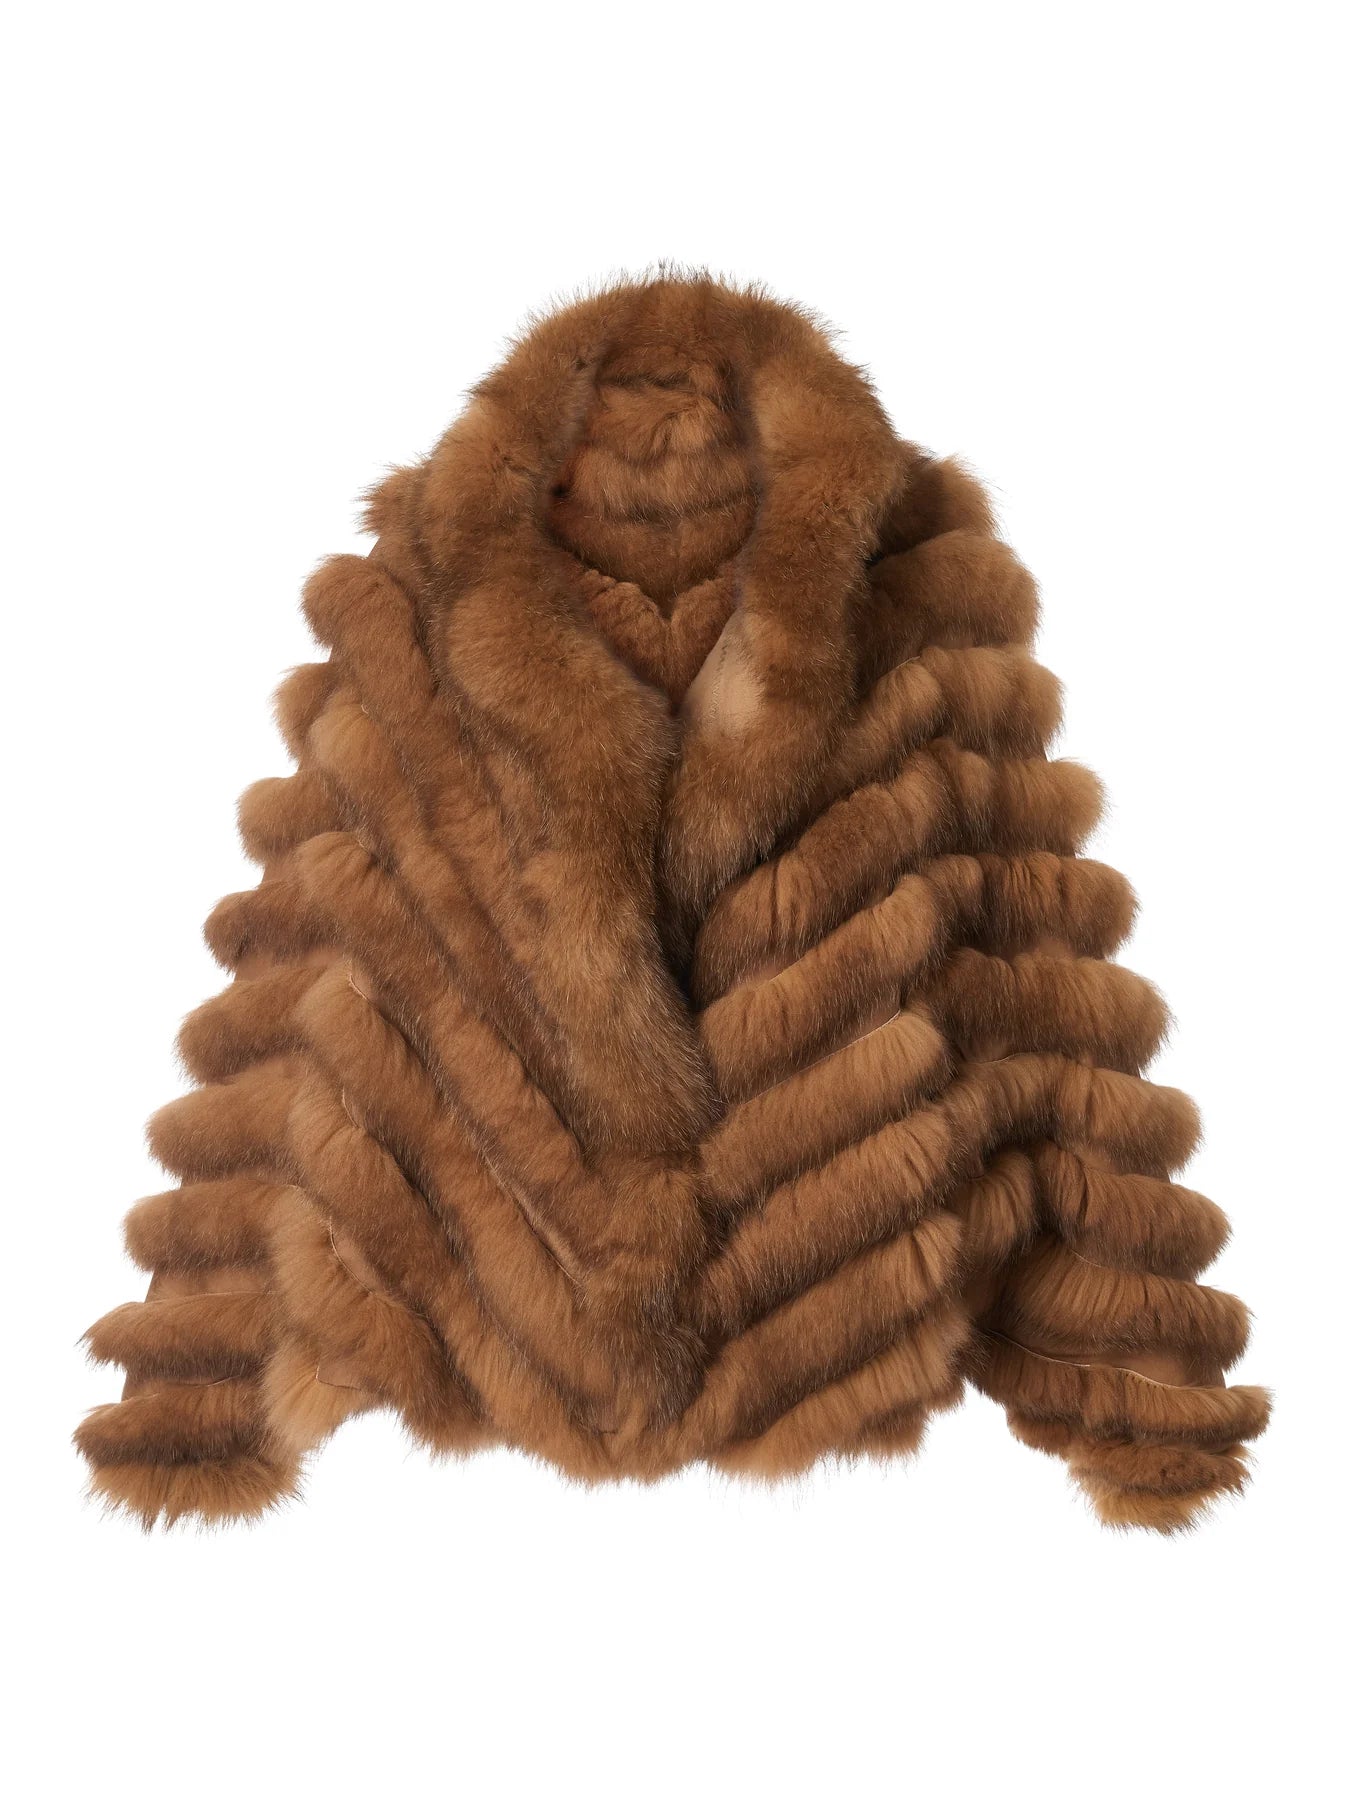 Diomi Design Silk/Fox Bomber, fur coat, fur bomber, coat, reversible coat, women's clothing